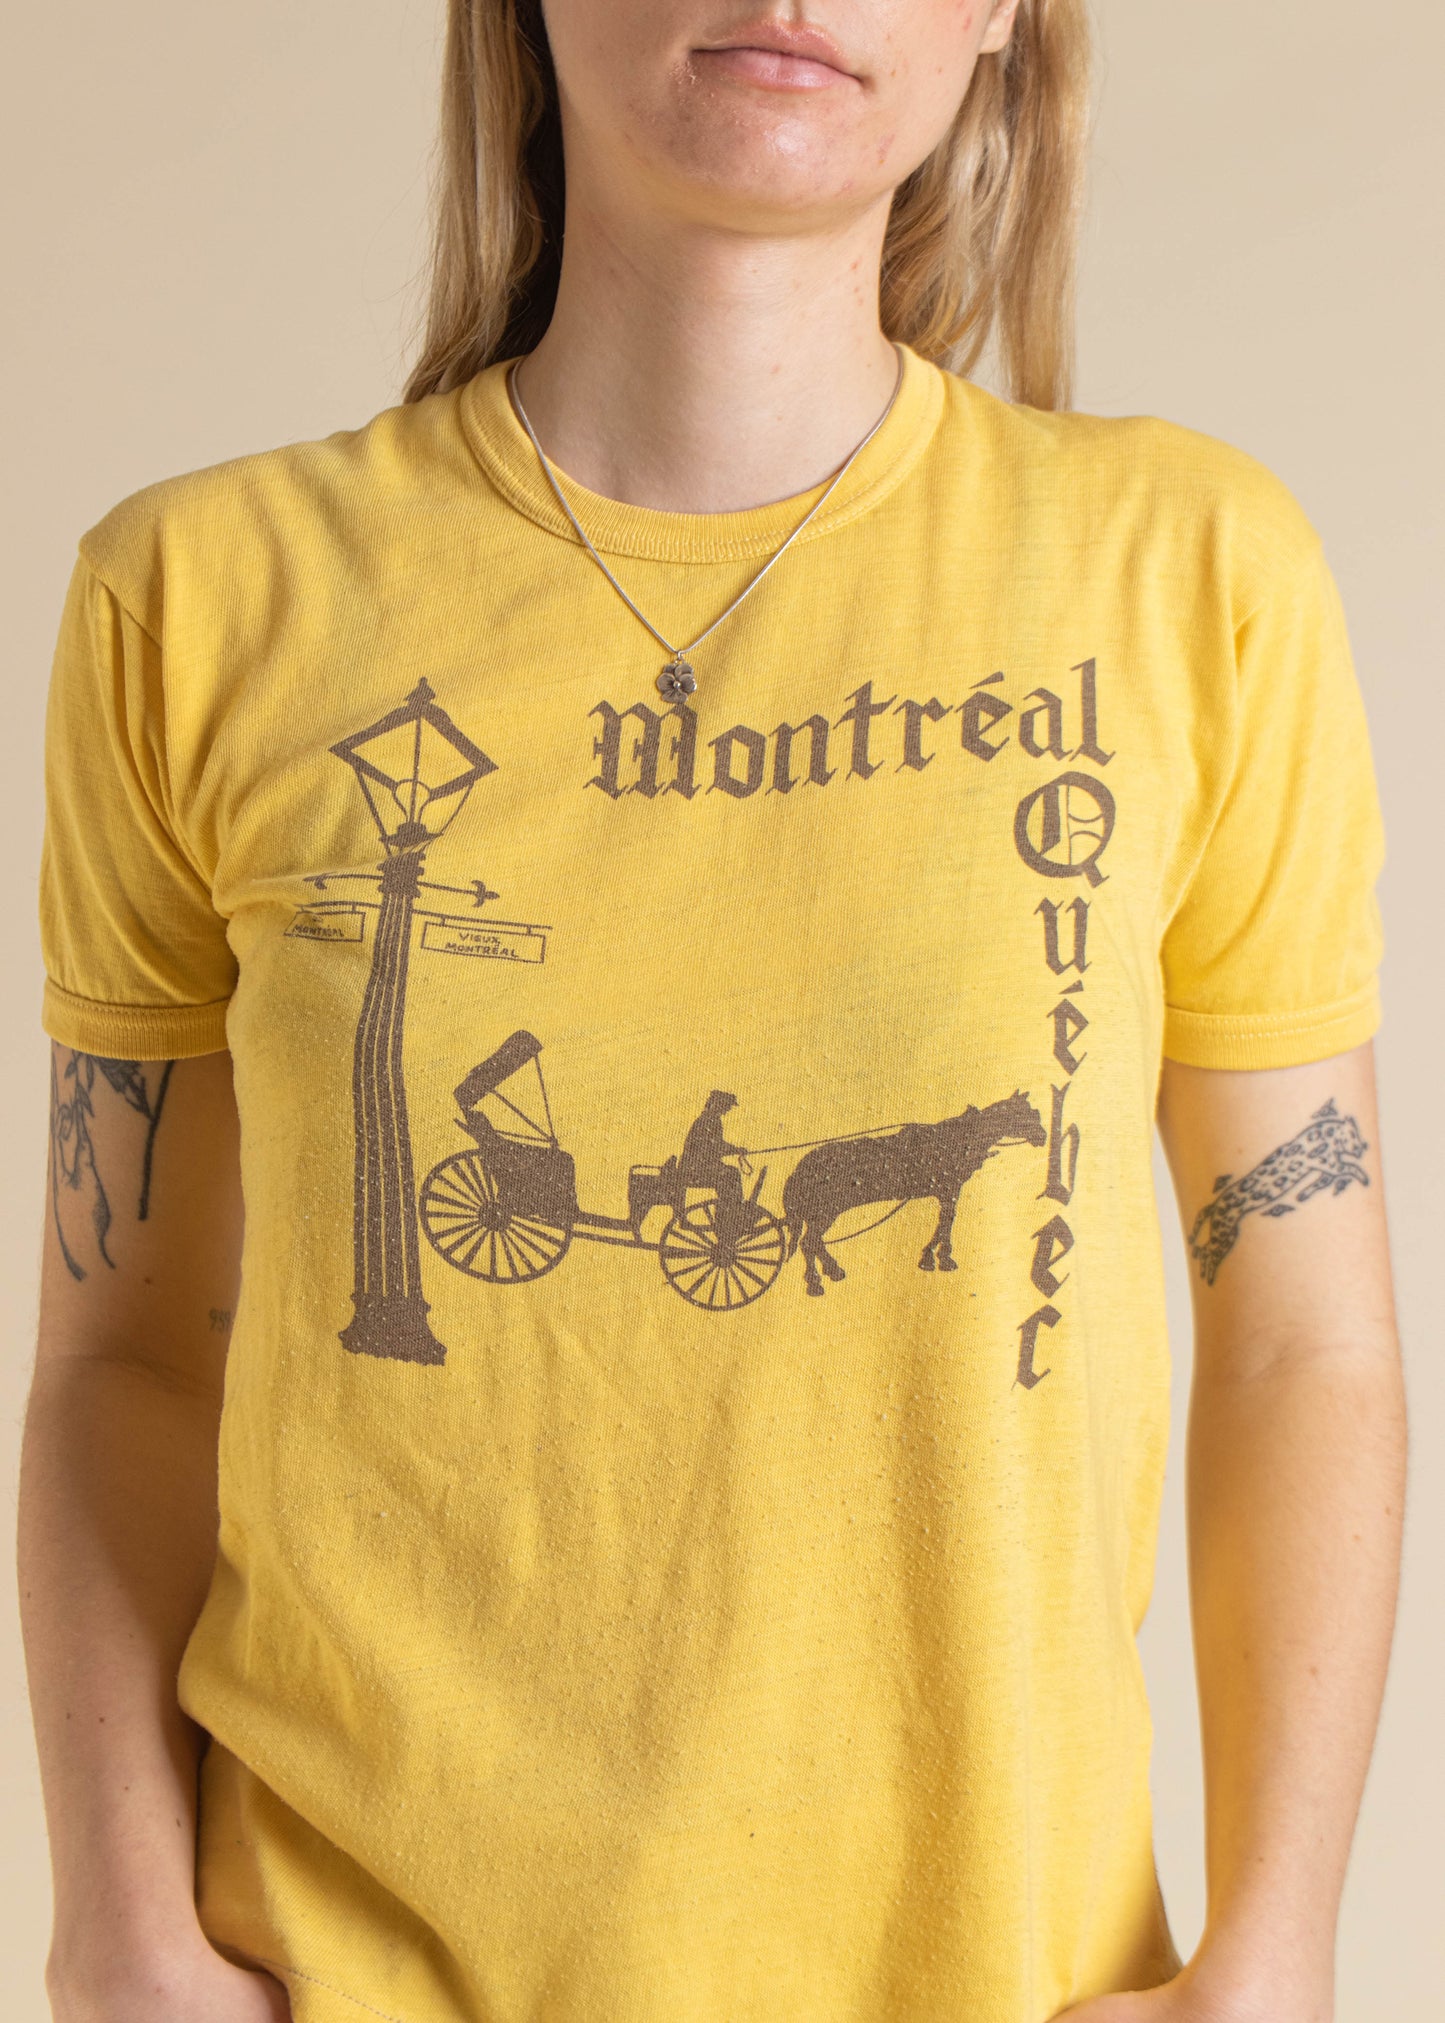 1970s Montréal Québec Souvenir Ringer T-Shirt Size XS/S